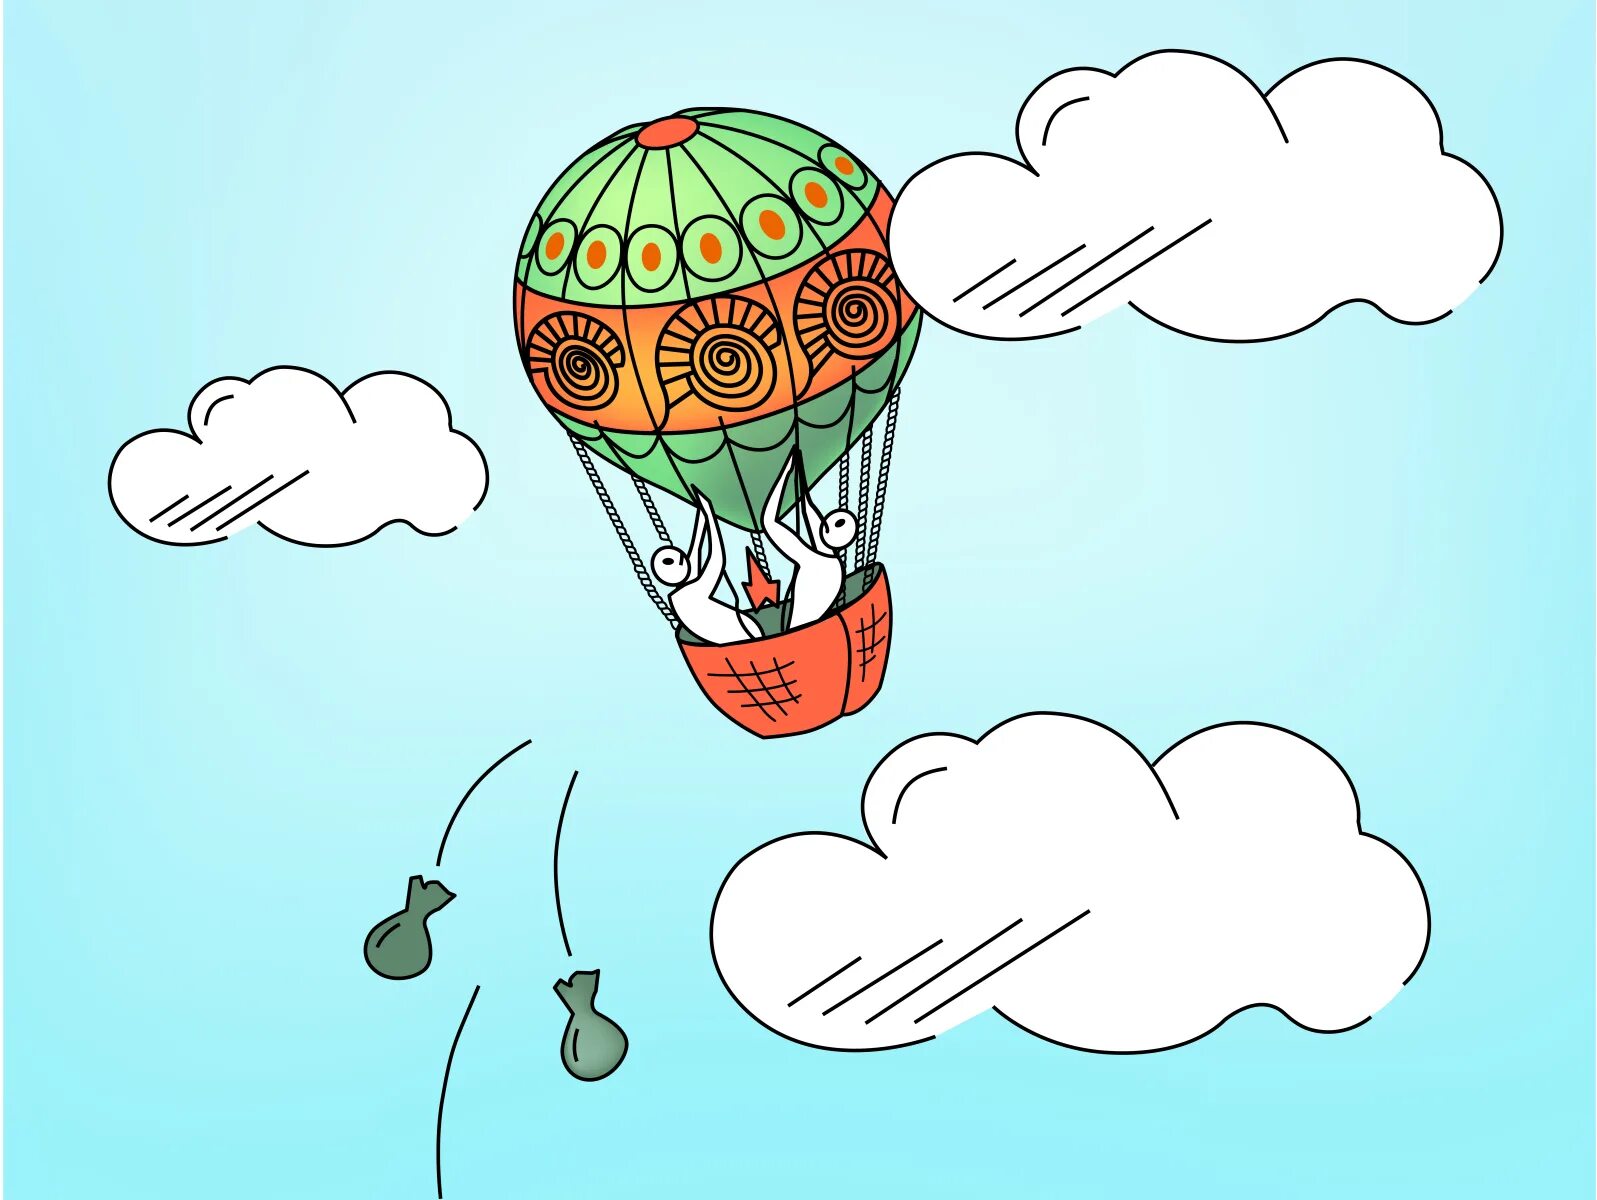 Груз на воздушном шаре. Воздушный шар балласт. Воздушный шар с грузом. Балласт на воздушном шаре. Воздушный шар сбрасывает балласт.